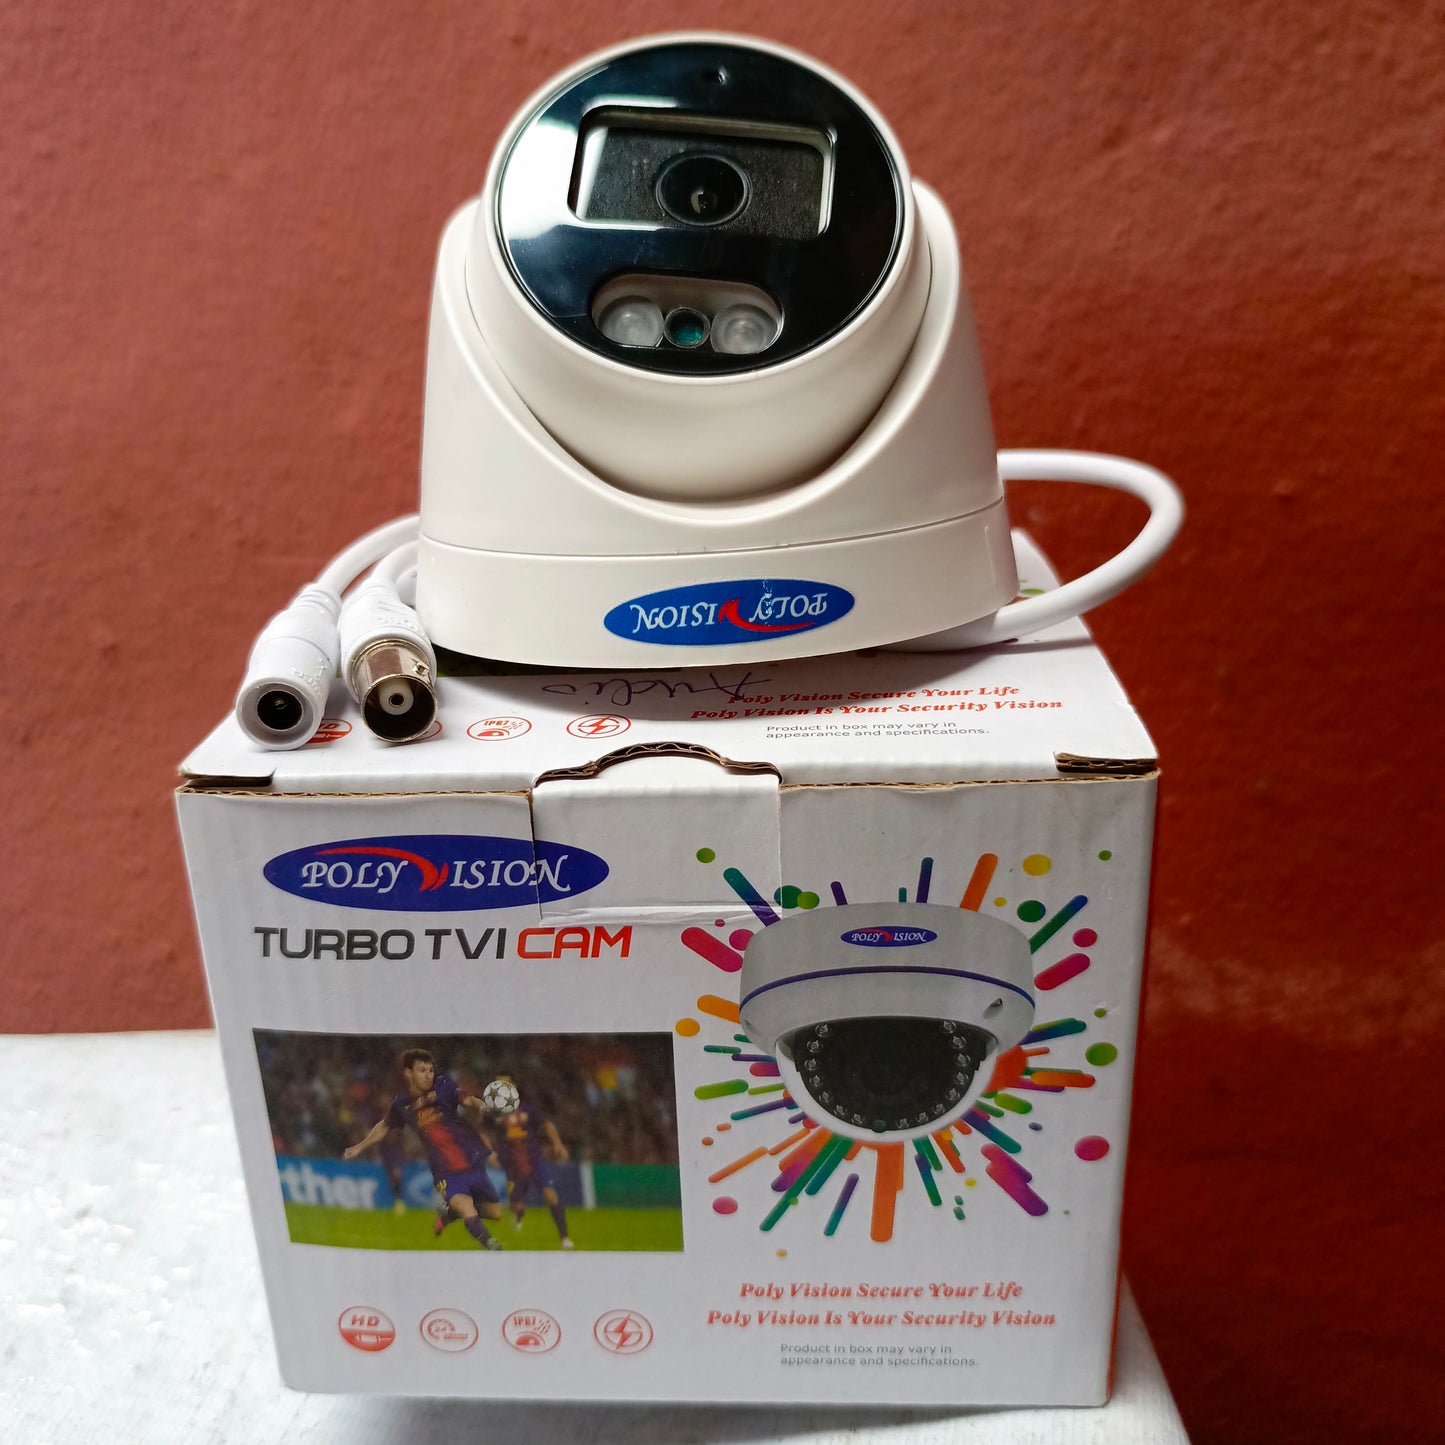 Caméra tourelle couleur POLYVISION IR-CCD (objectif 3,6 mm 1,3 MP) avec audio coaxial - Tout neuf